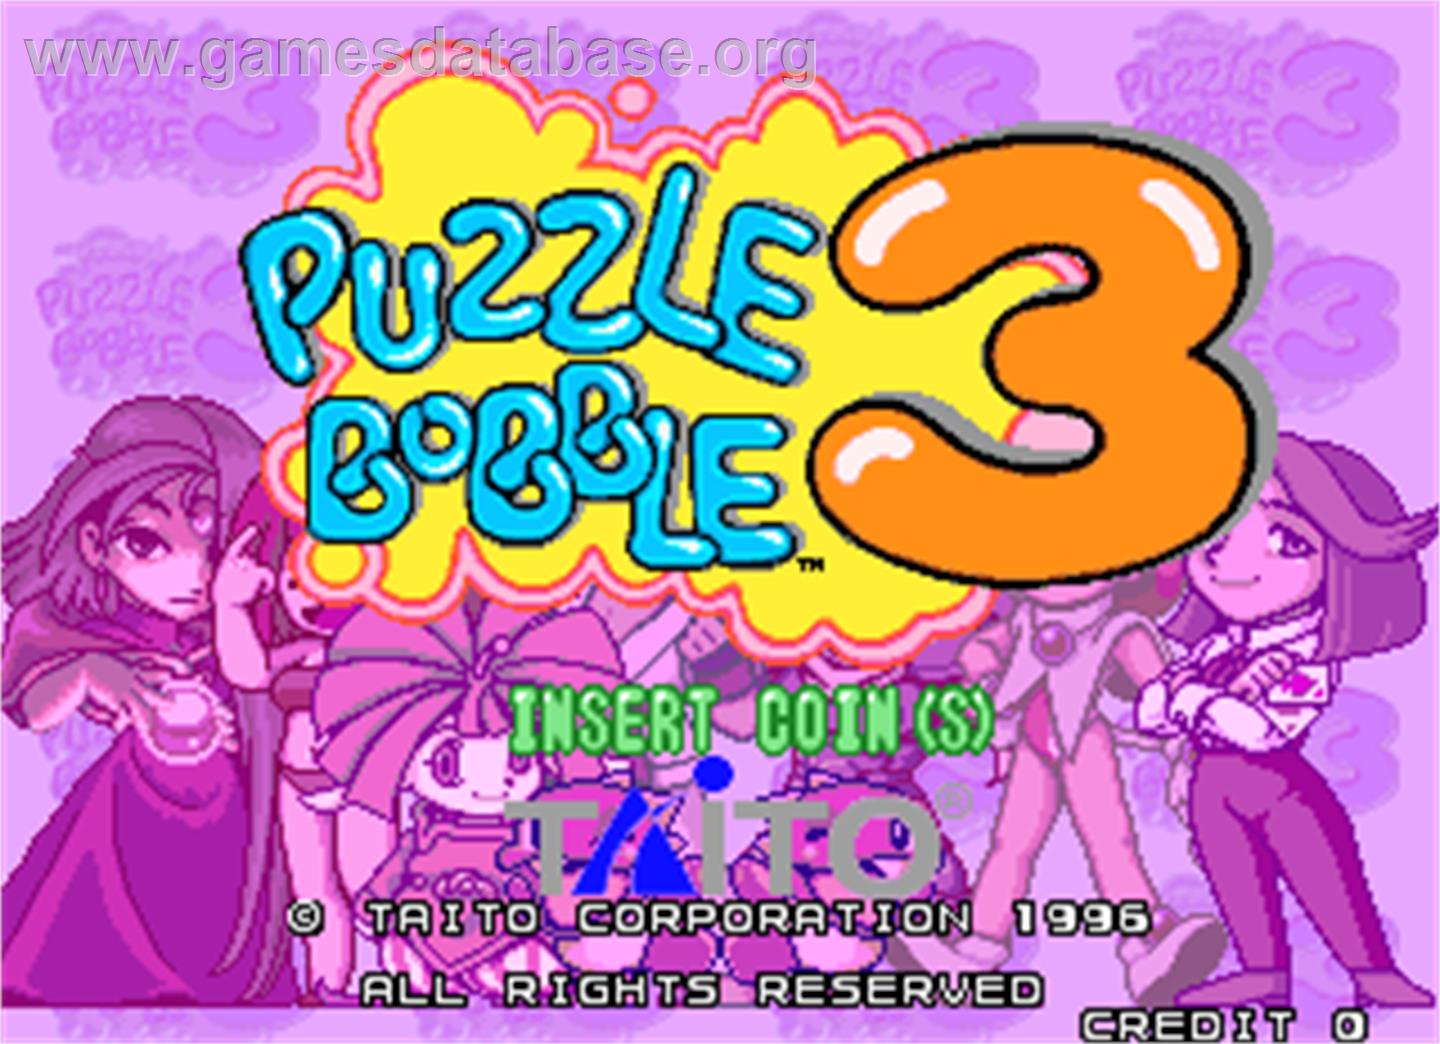 Puzzle Bobble 3 - Arcade - Artwork - Title Screen